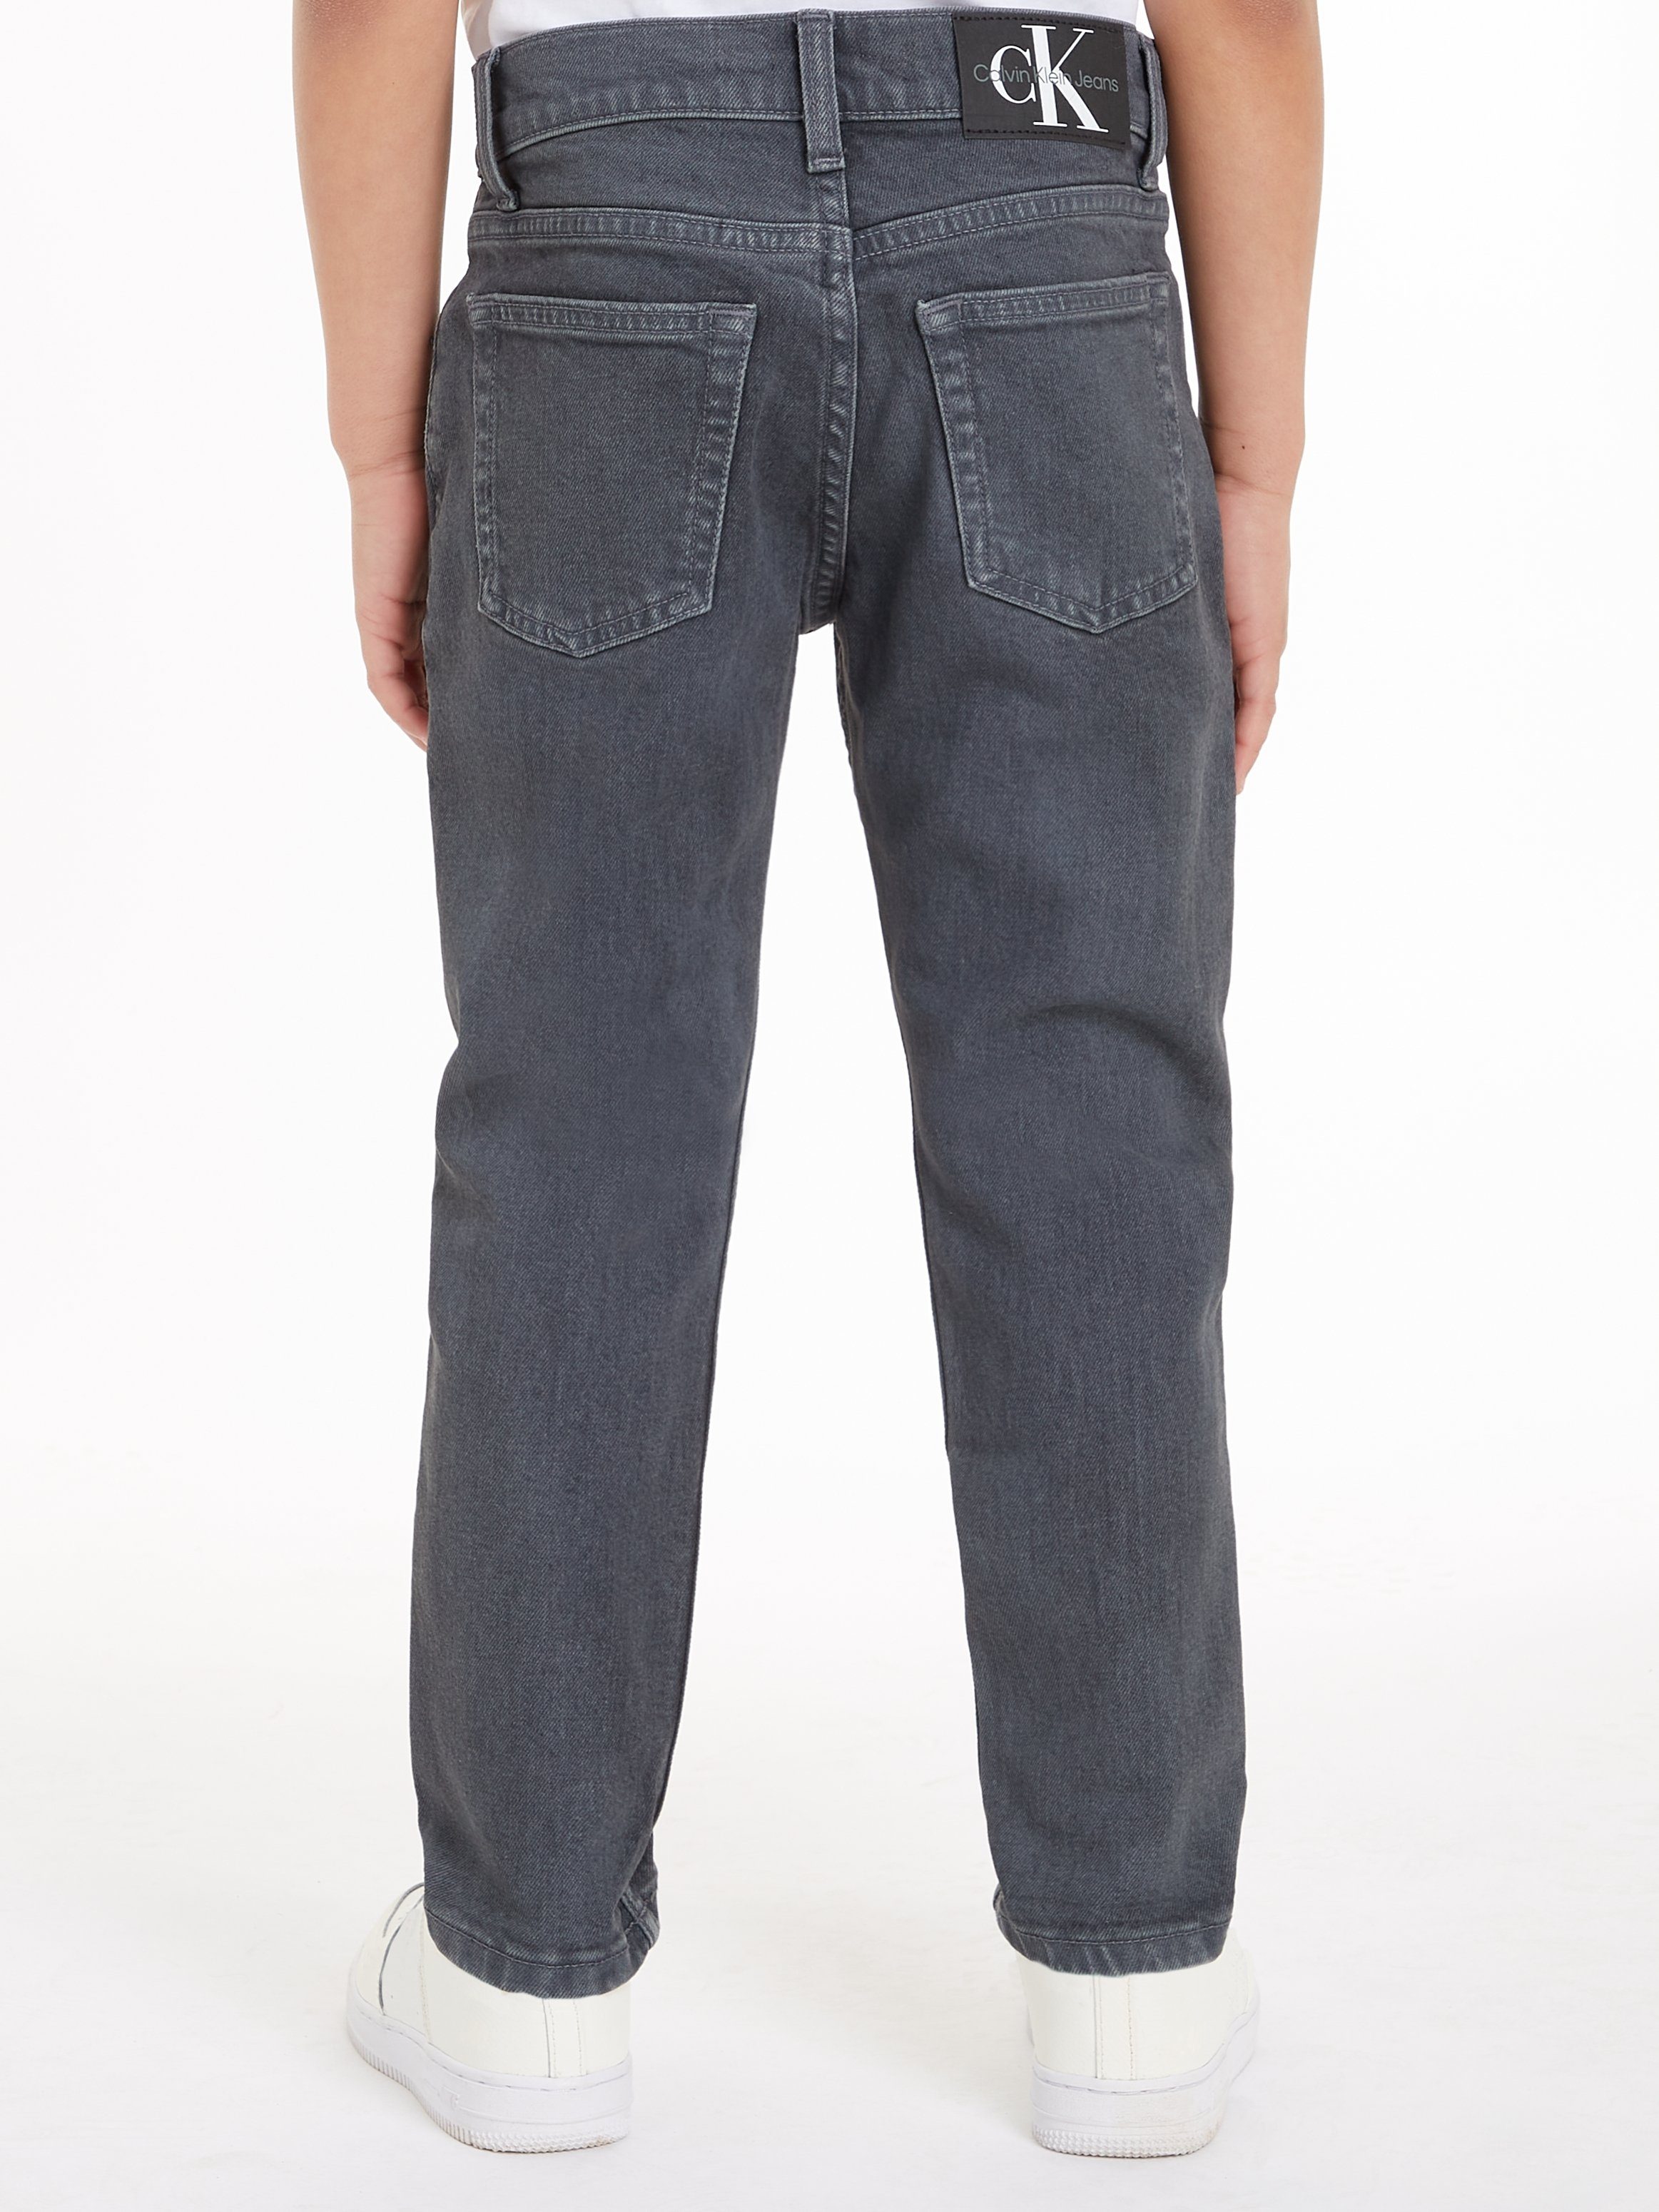 Calvin Klein Jeans Stretch-Jeans DAD DARK GREY OVERDYED